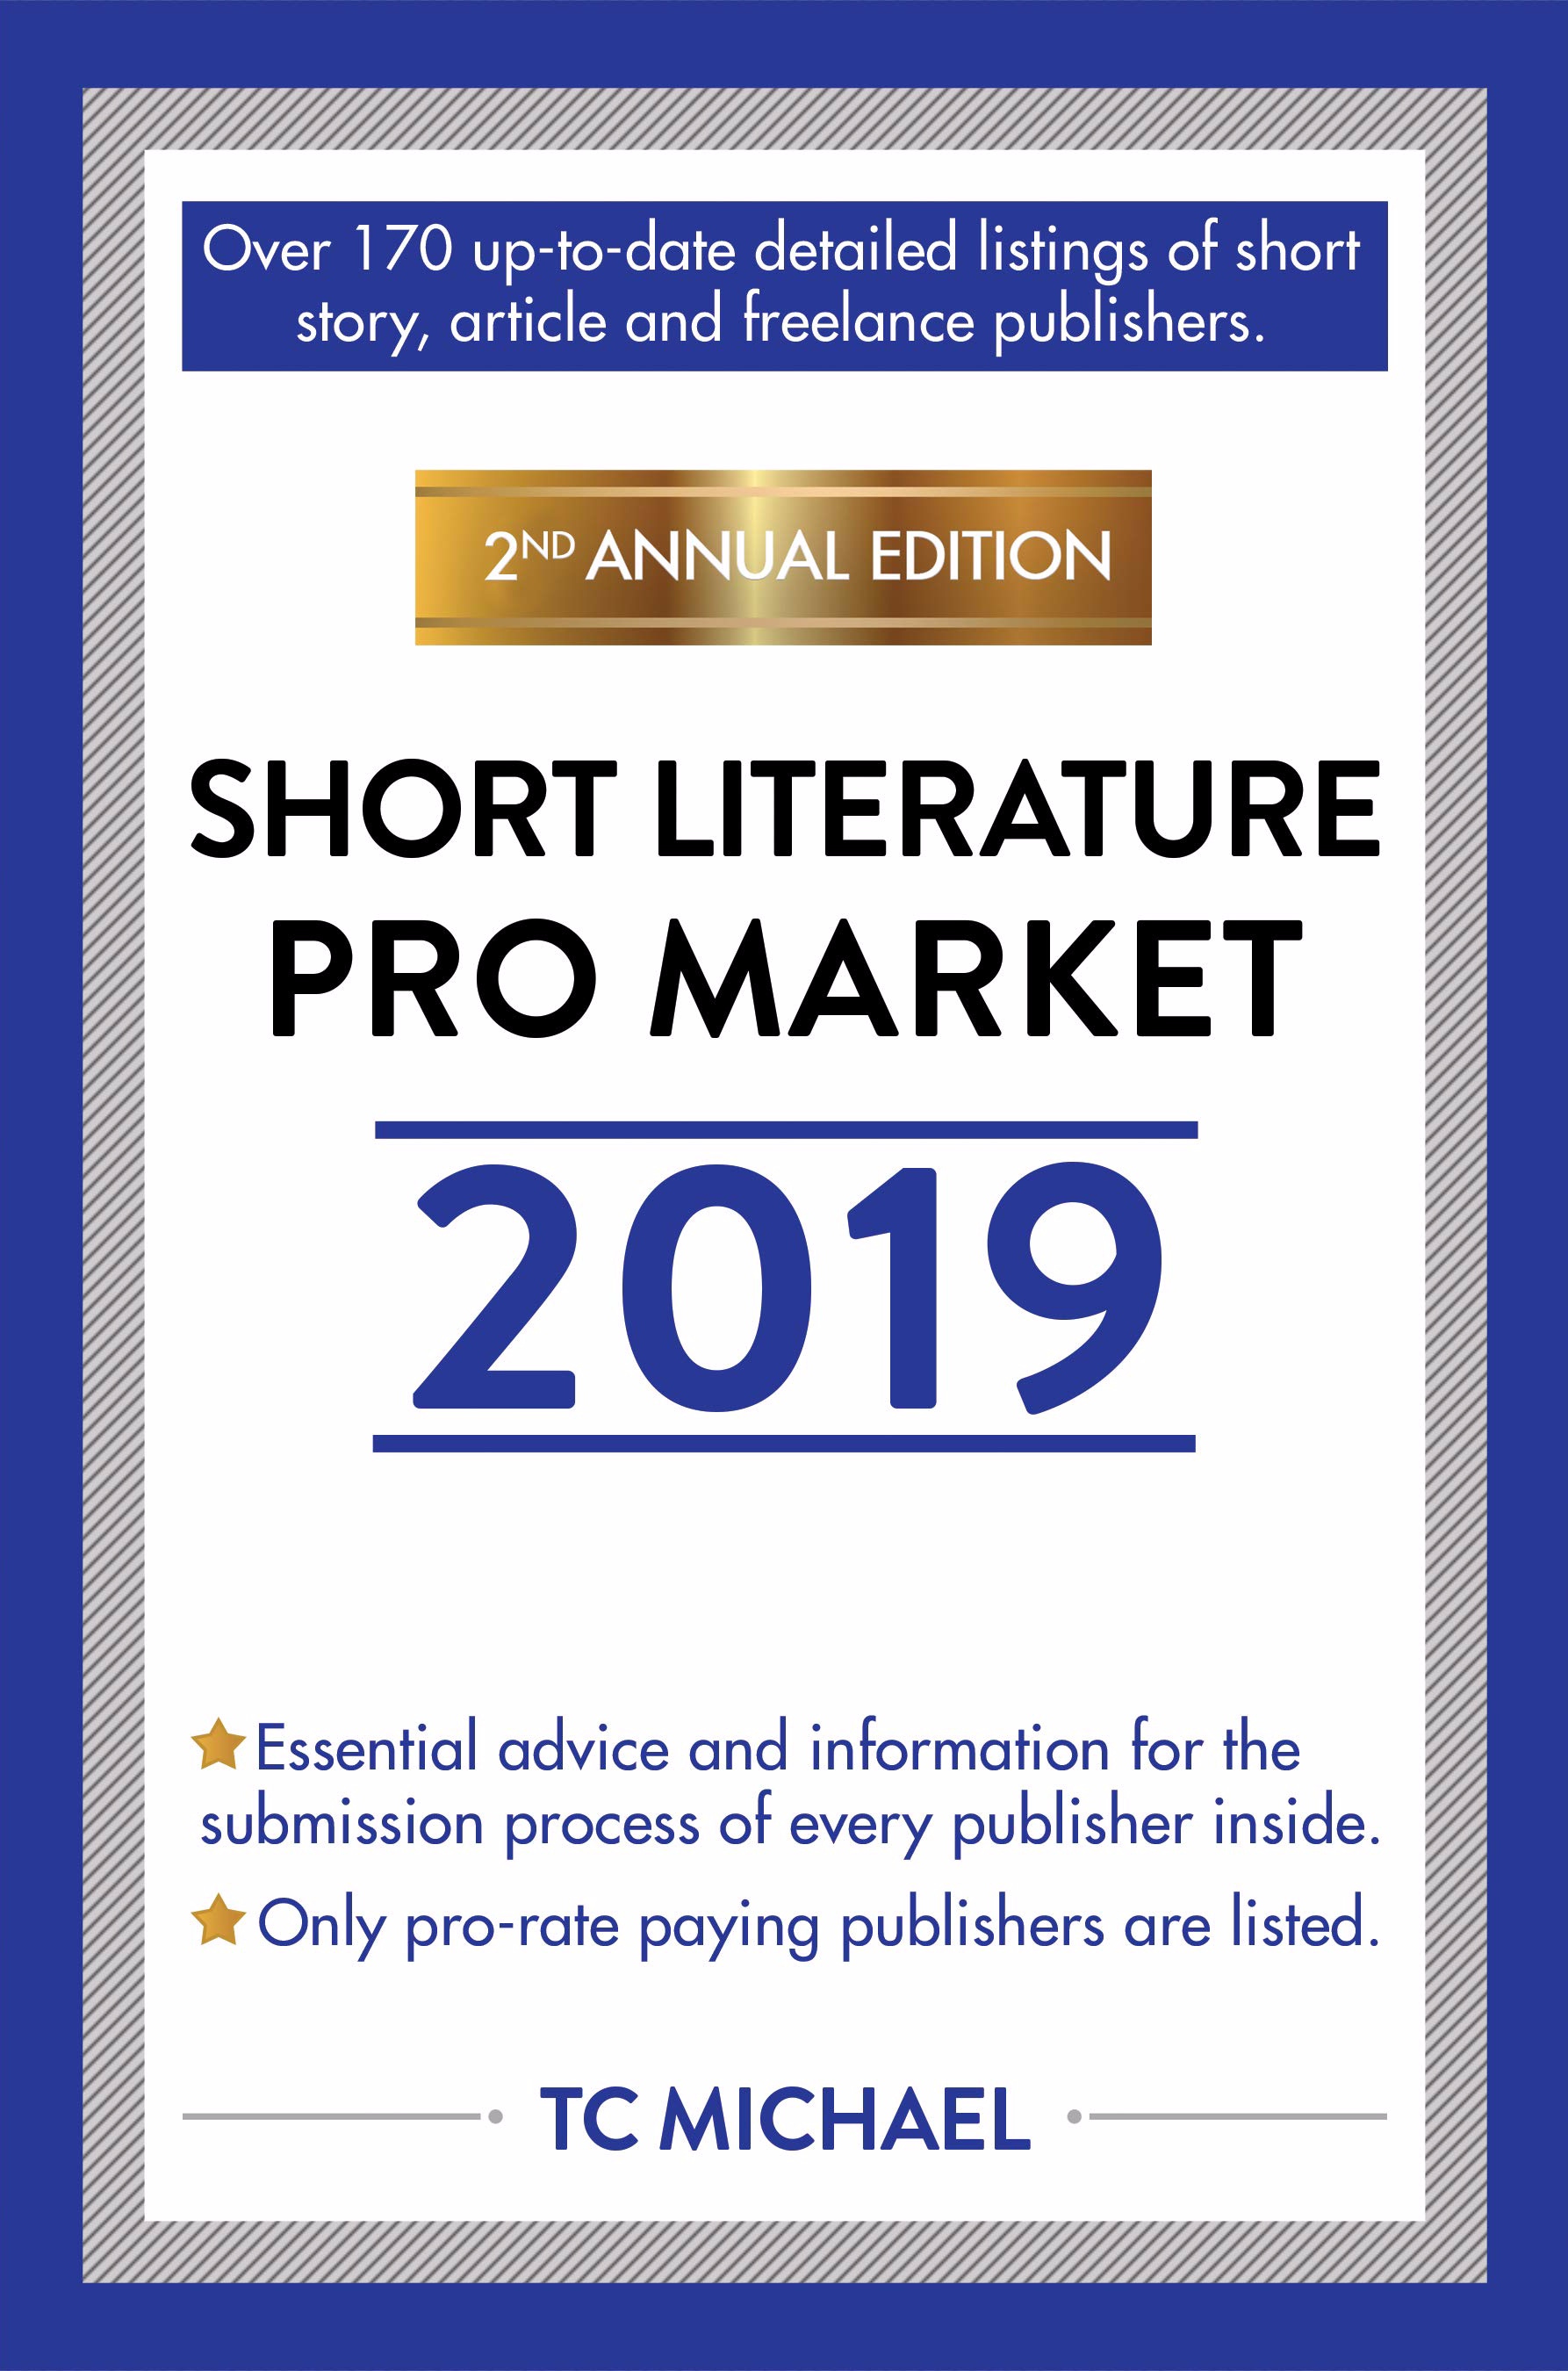 FREE: Short Nonfiction Pro Market 2019 by TC Michael